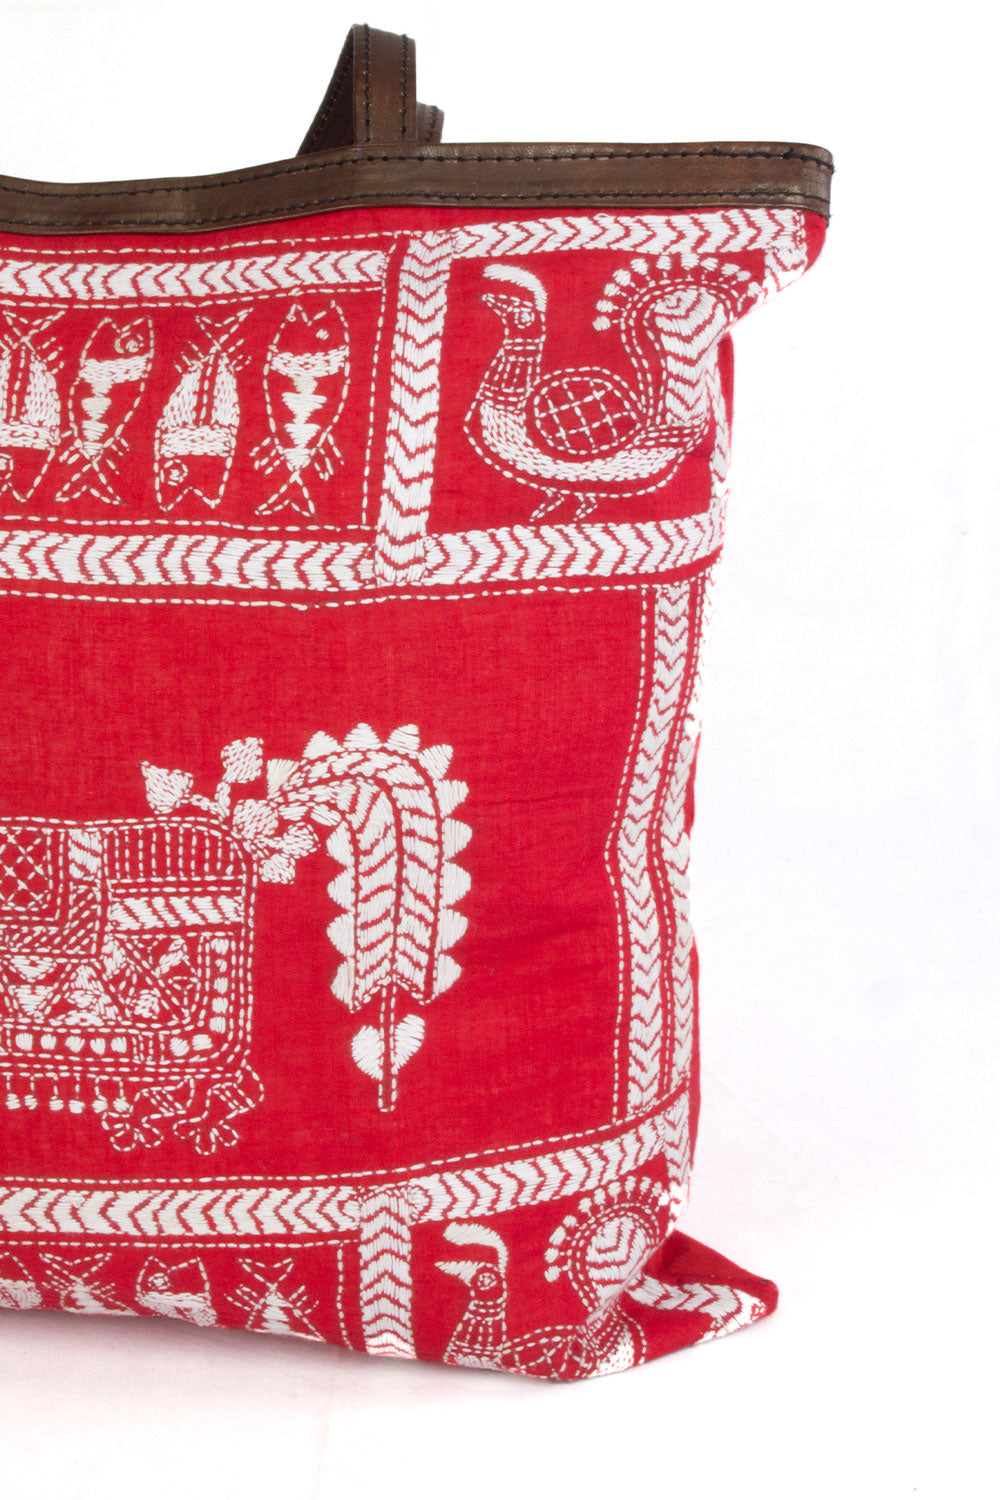 Red Kantha Embroidery Tote Bag - Avishya